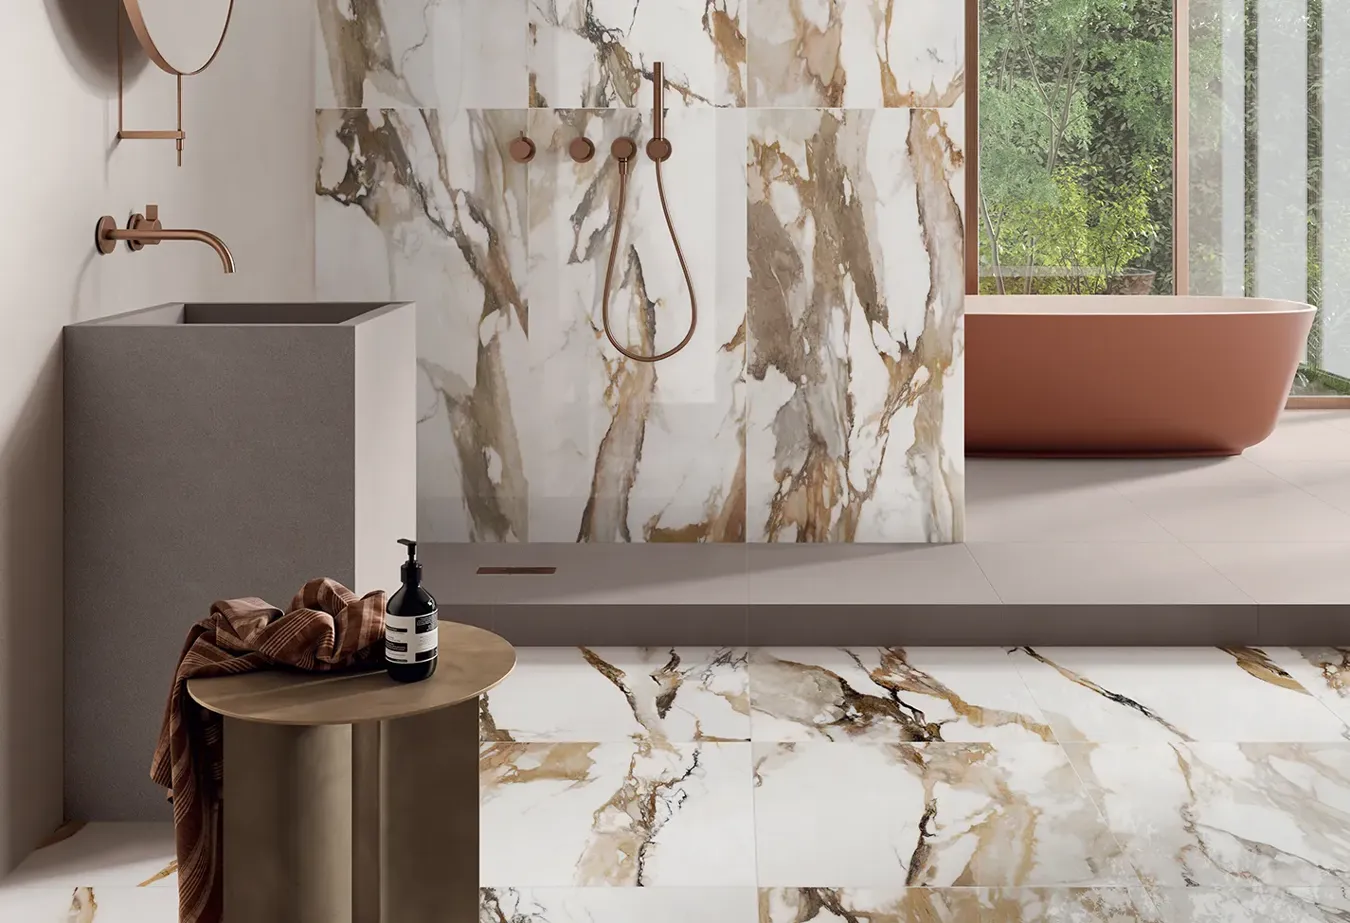 Bagno lussuoso con gres porcellanato 9cento Alba Oro, effetto marmo art deco, accenti rame e natura esterna.